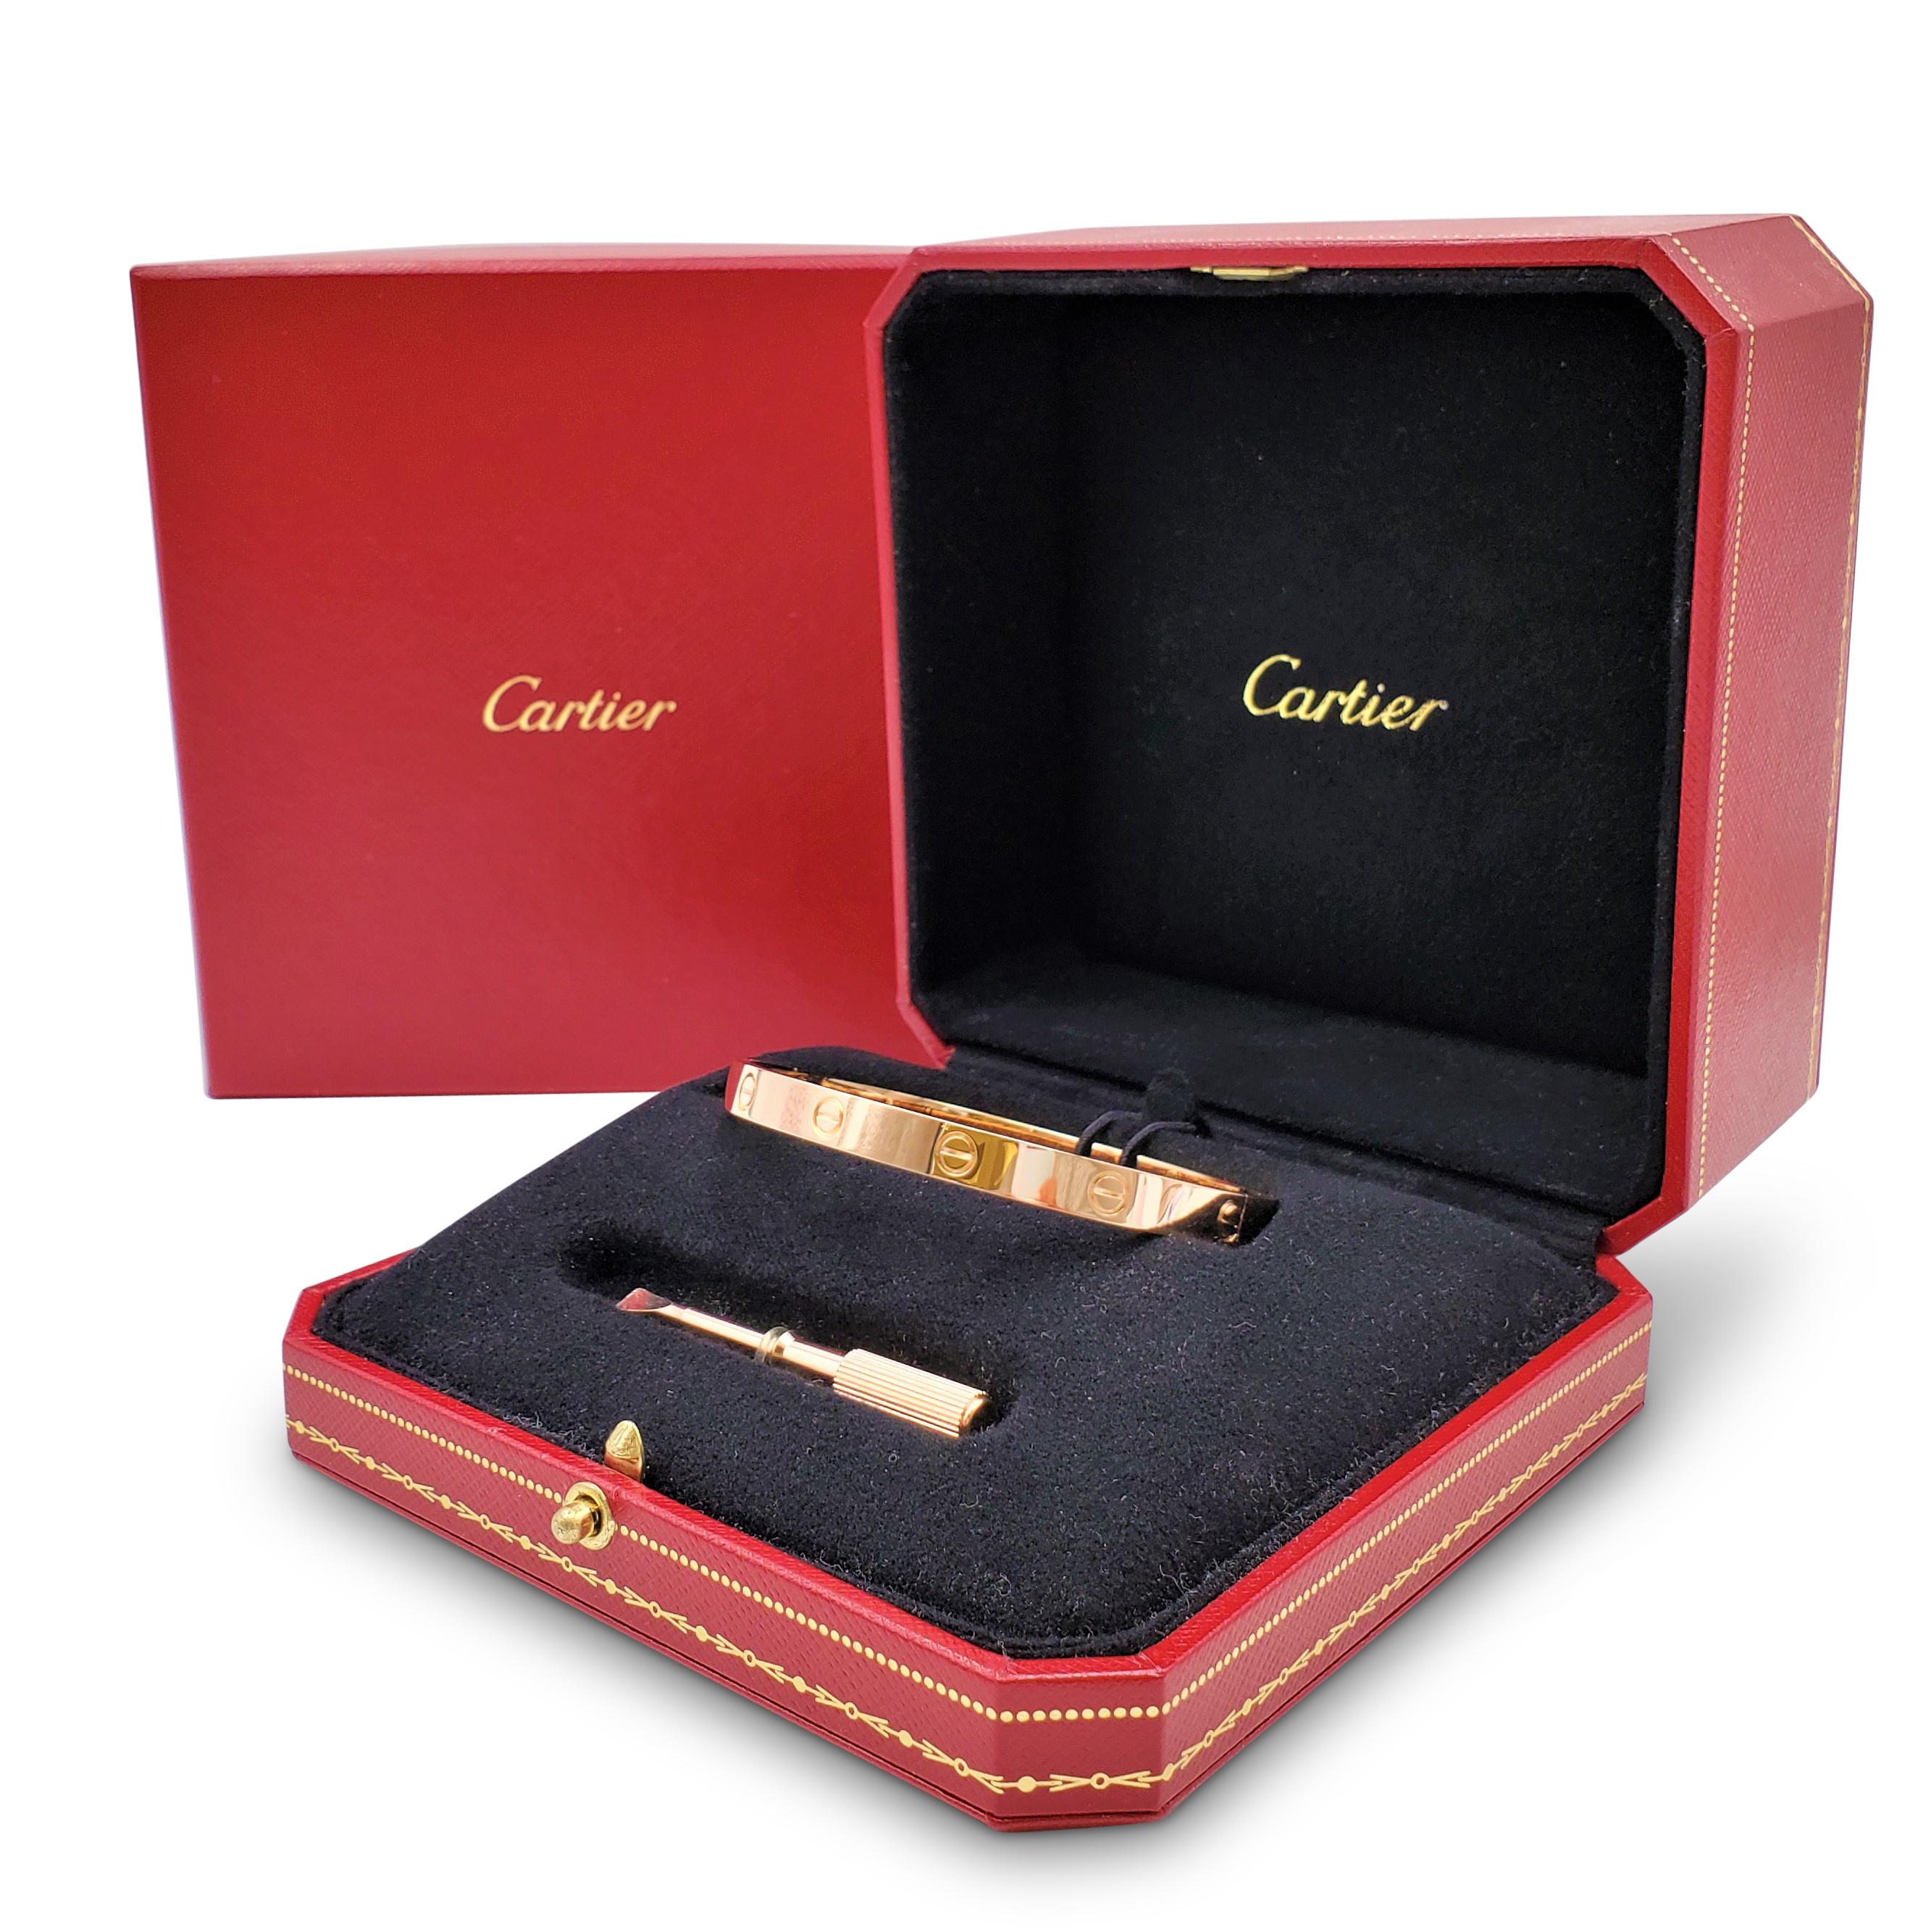 Cartier 'Love' Rose Gold Bracelet 2